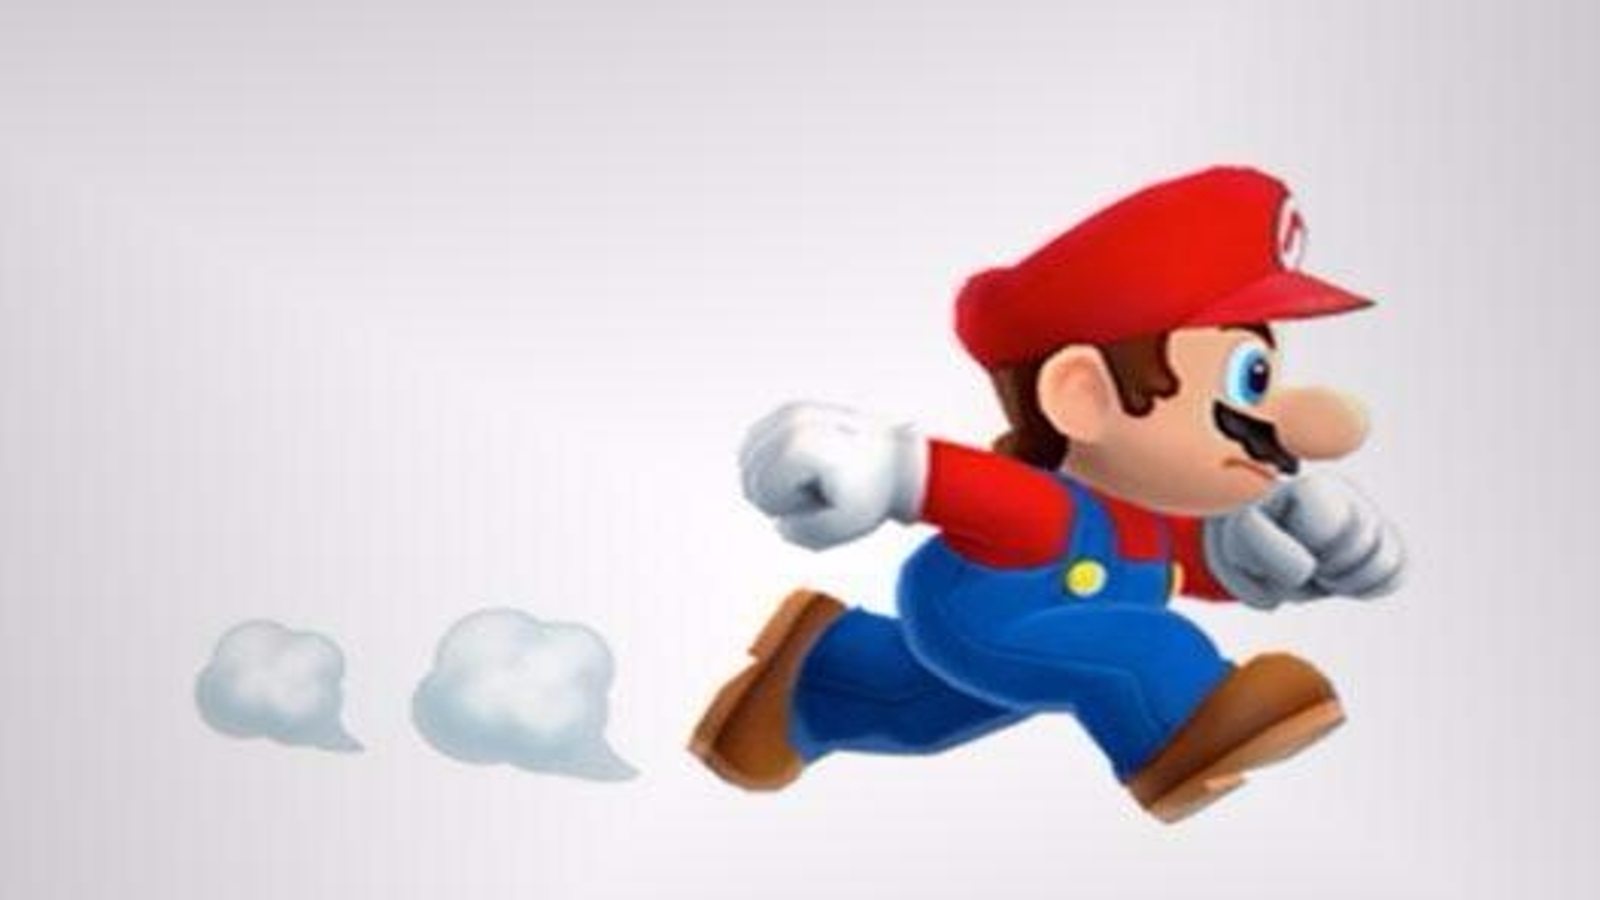 Super Mario Run Isn't Very Long